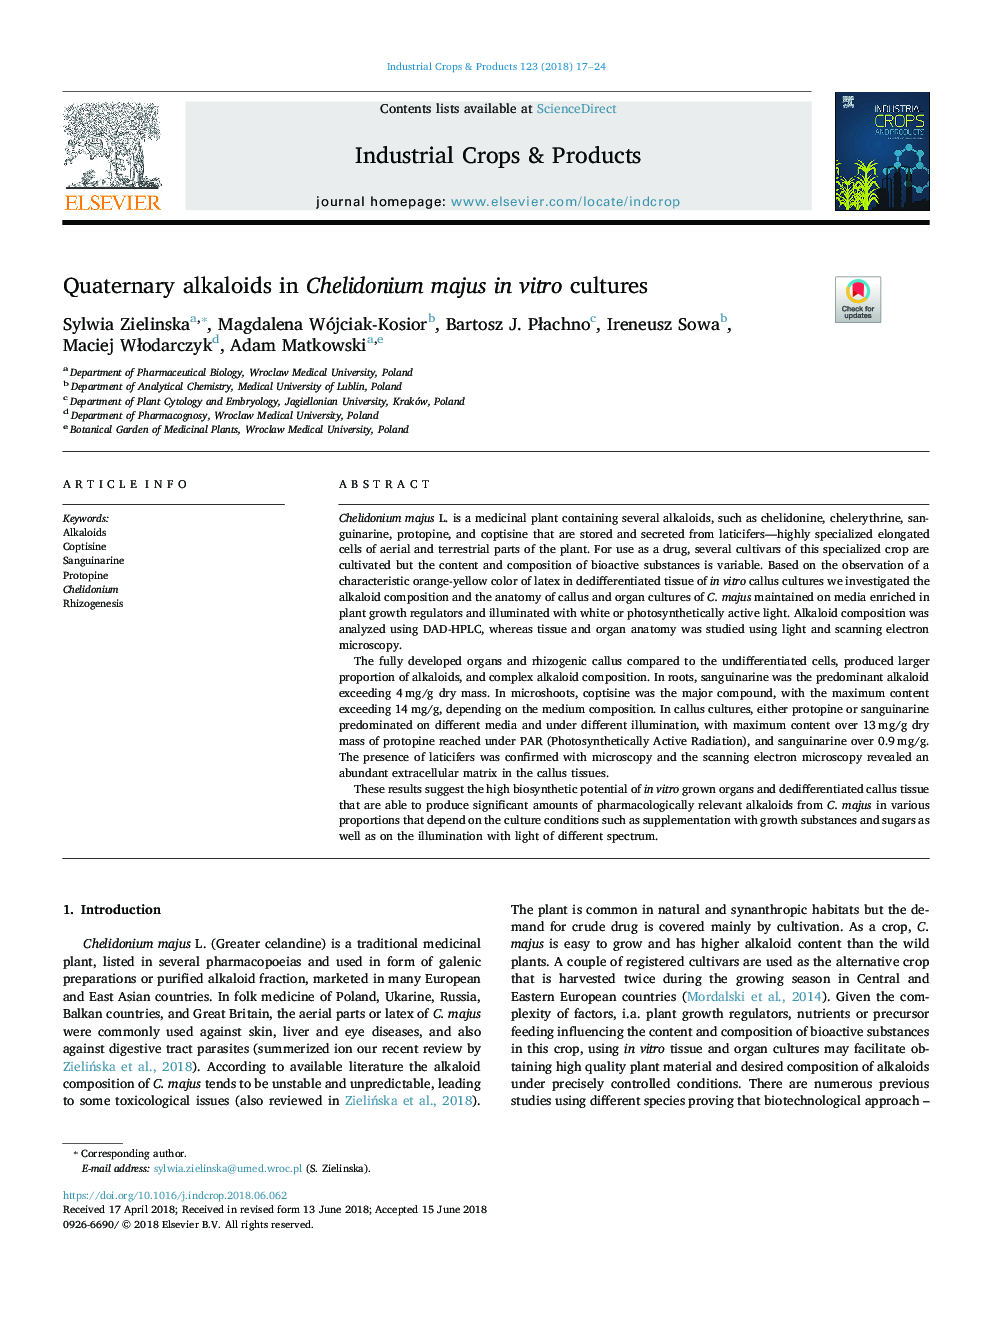 Quaternary alkaloids in Chelidonium majus in vitro cultures